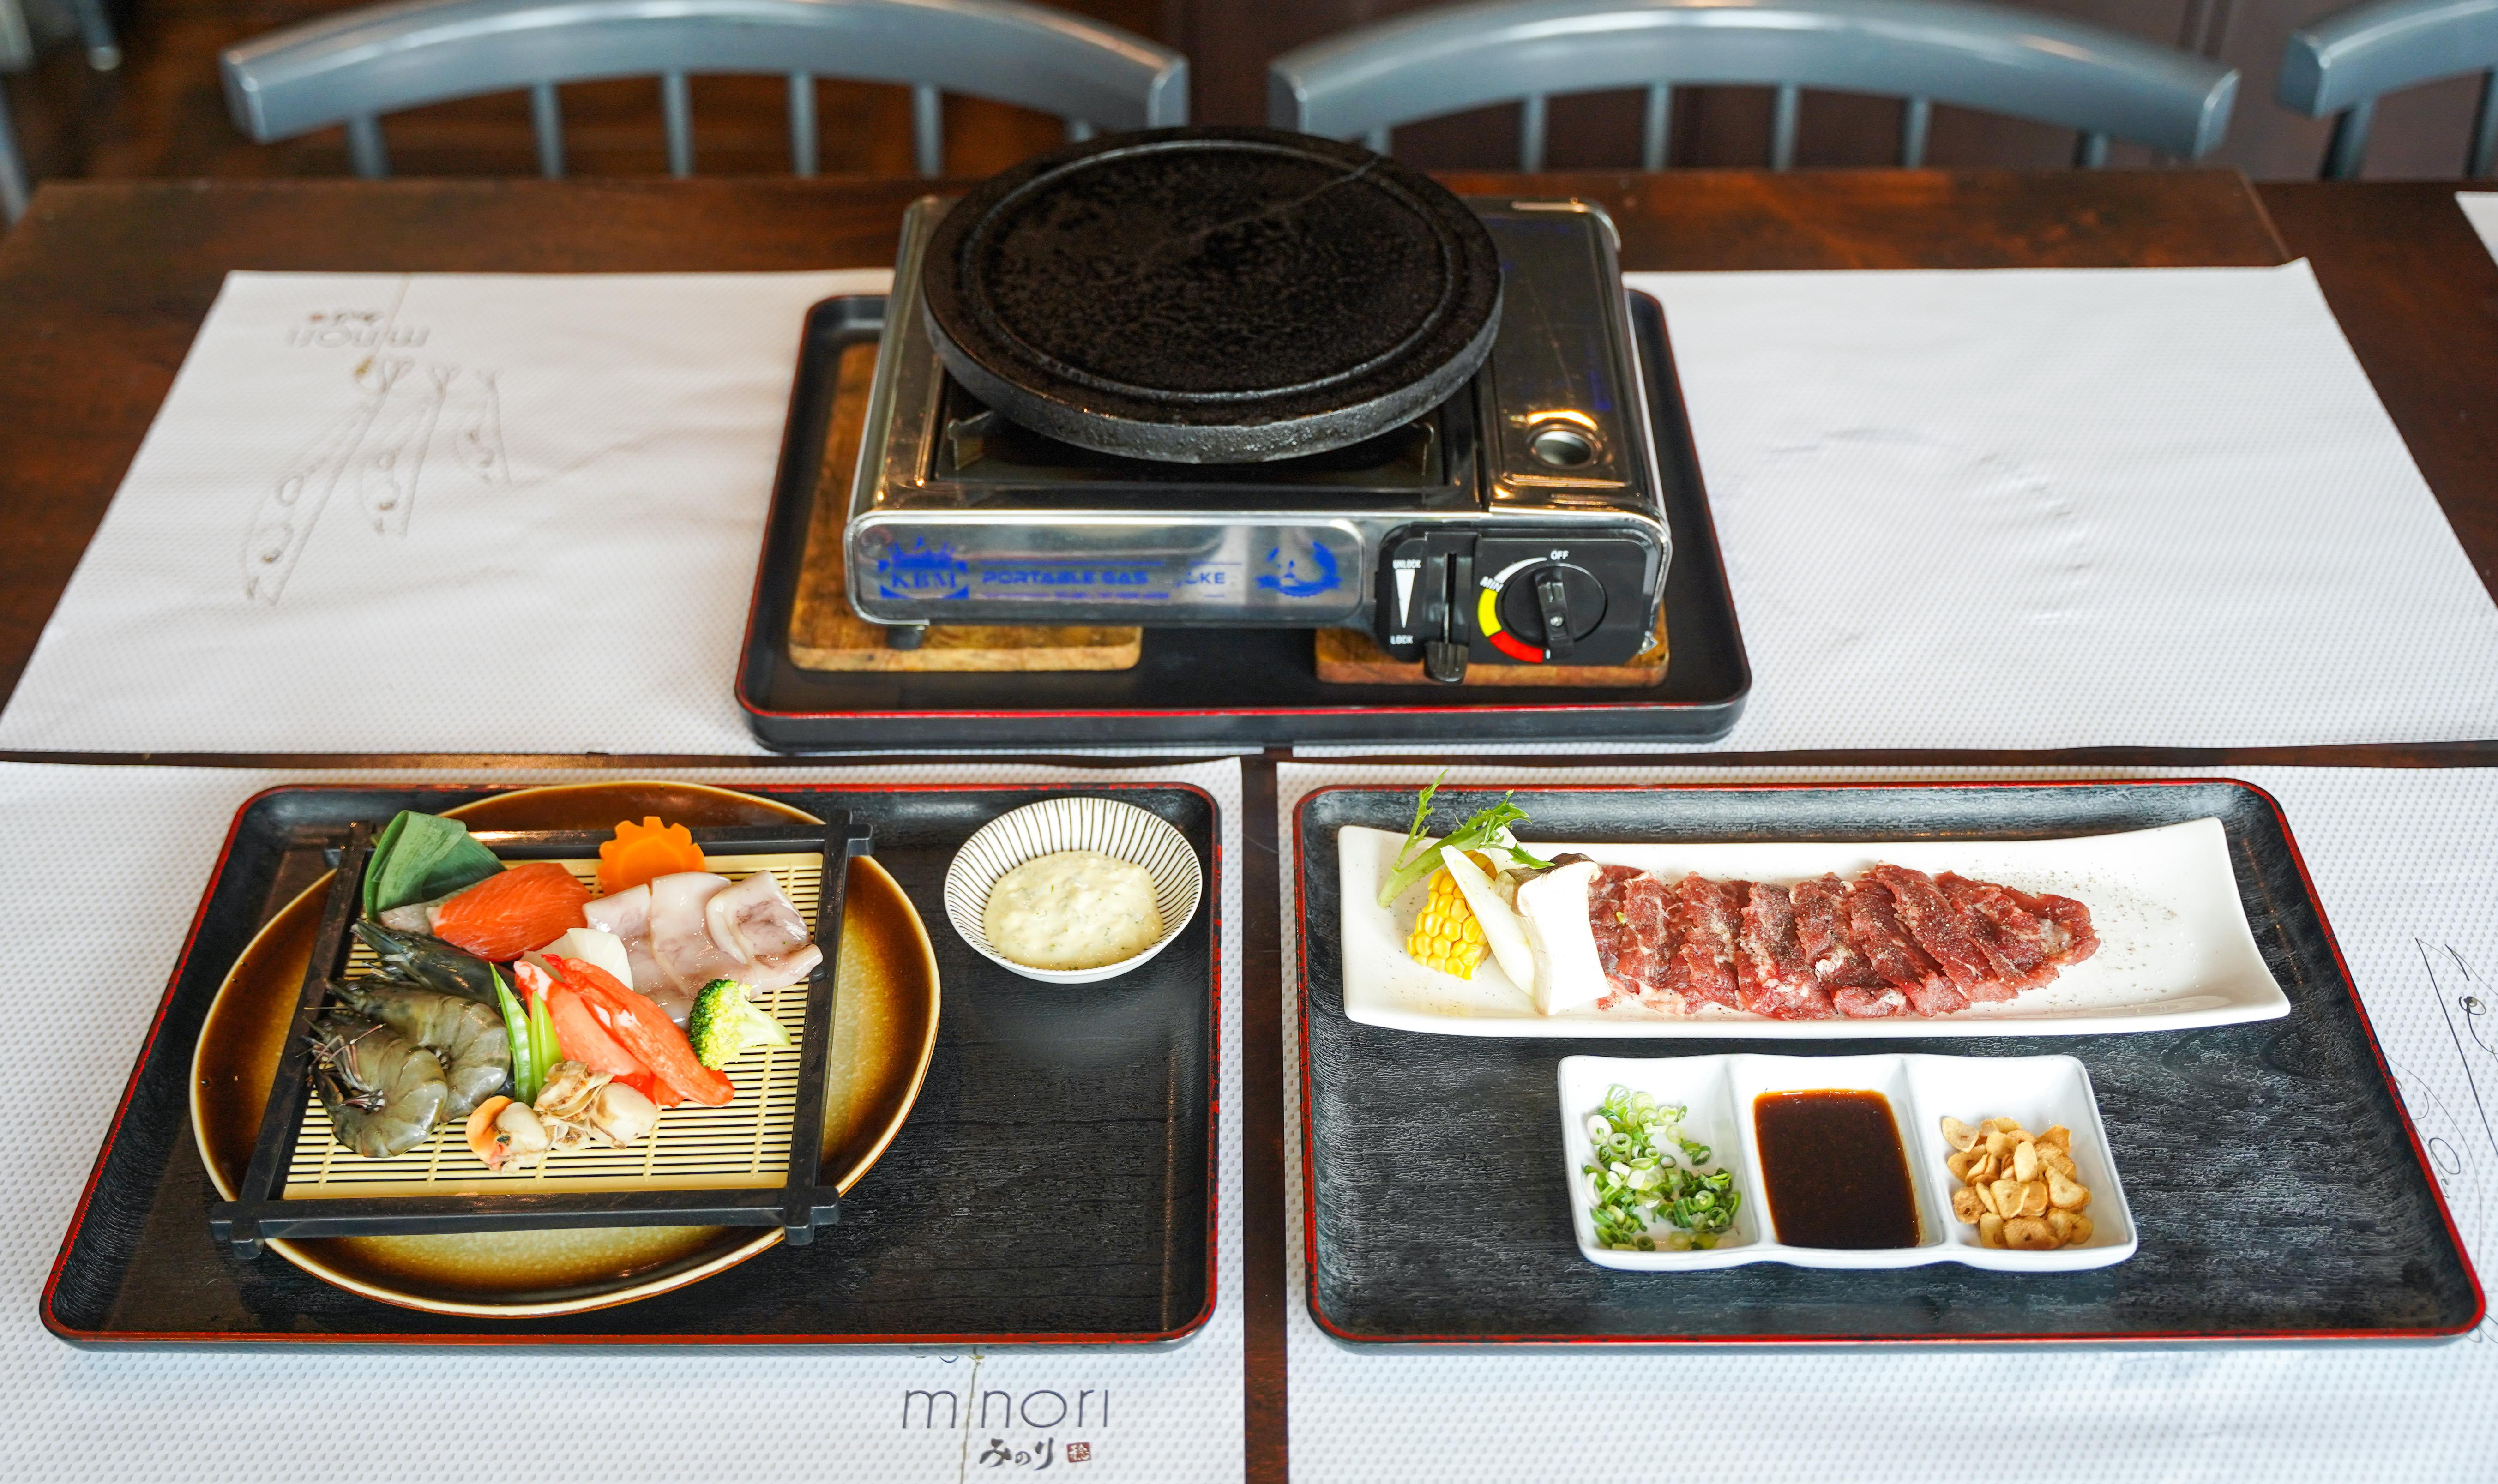 Hokkaido volcanic hot stone beef & seafood turn up the heat at Minori Japanese Restaurant